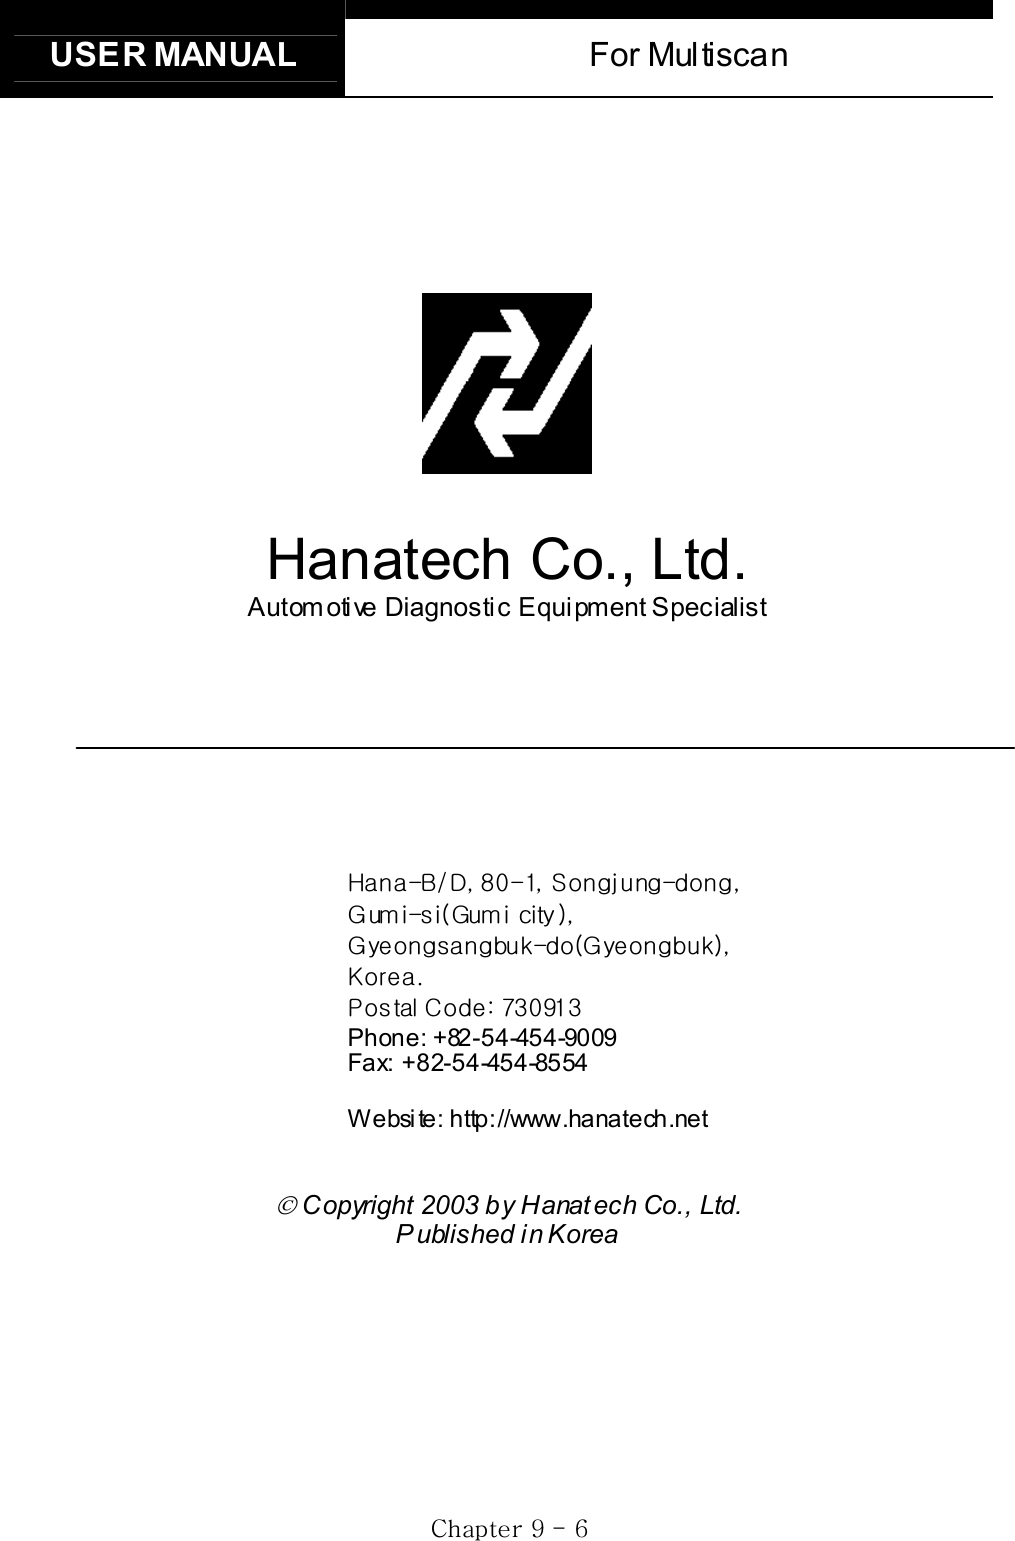 USER MANUAL  For Multiscan GjG`GTG ]GٻٻٻٻٻٻHanatech Co., Ltd. Autom otive Diagnostic Equipment Specialist ٻٻٻٻٻٻoTiVkSG_WTXSGzTSG GnTOnGPSGGnTOnPSGrUGwGjaG^ZW`XZGPhone: +82-54-454-9009 Fax: +82-54-454-8554 Website: http://www.hanatech.net  Copyright 2003 by Hanat ech Co., Ltd. P ublished in KoreaGG